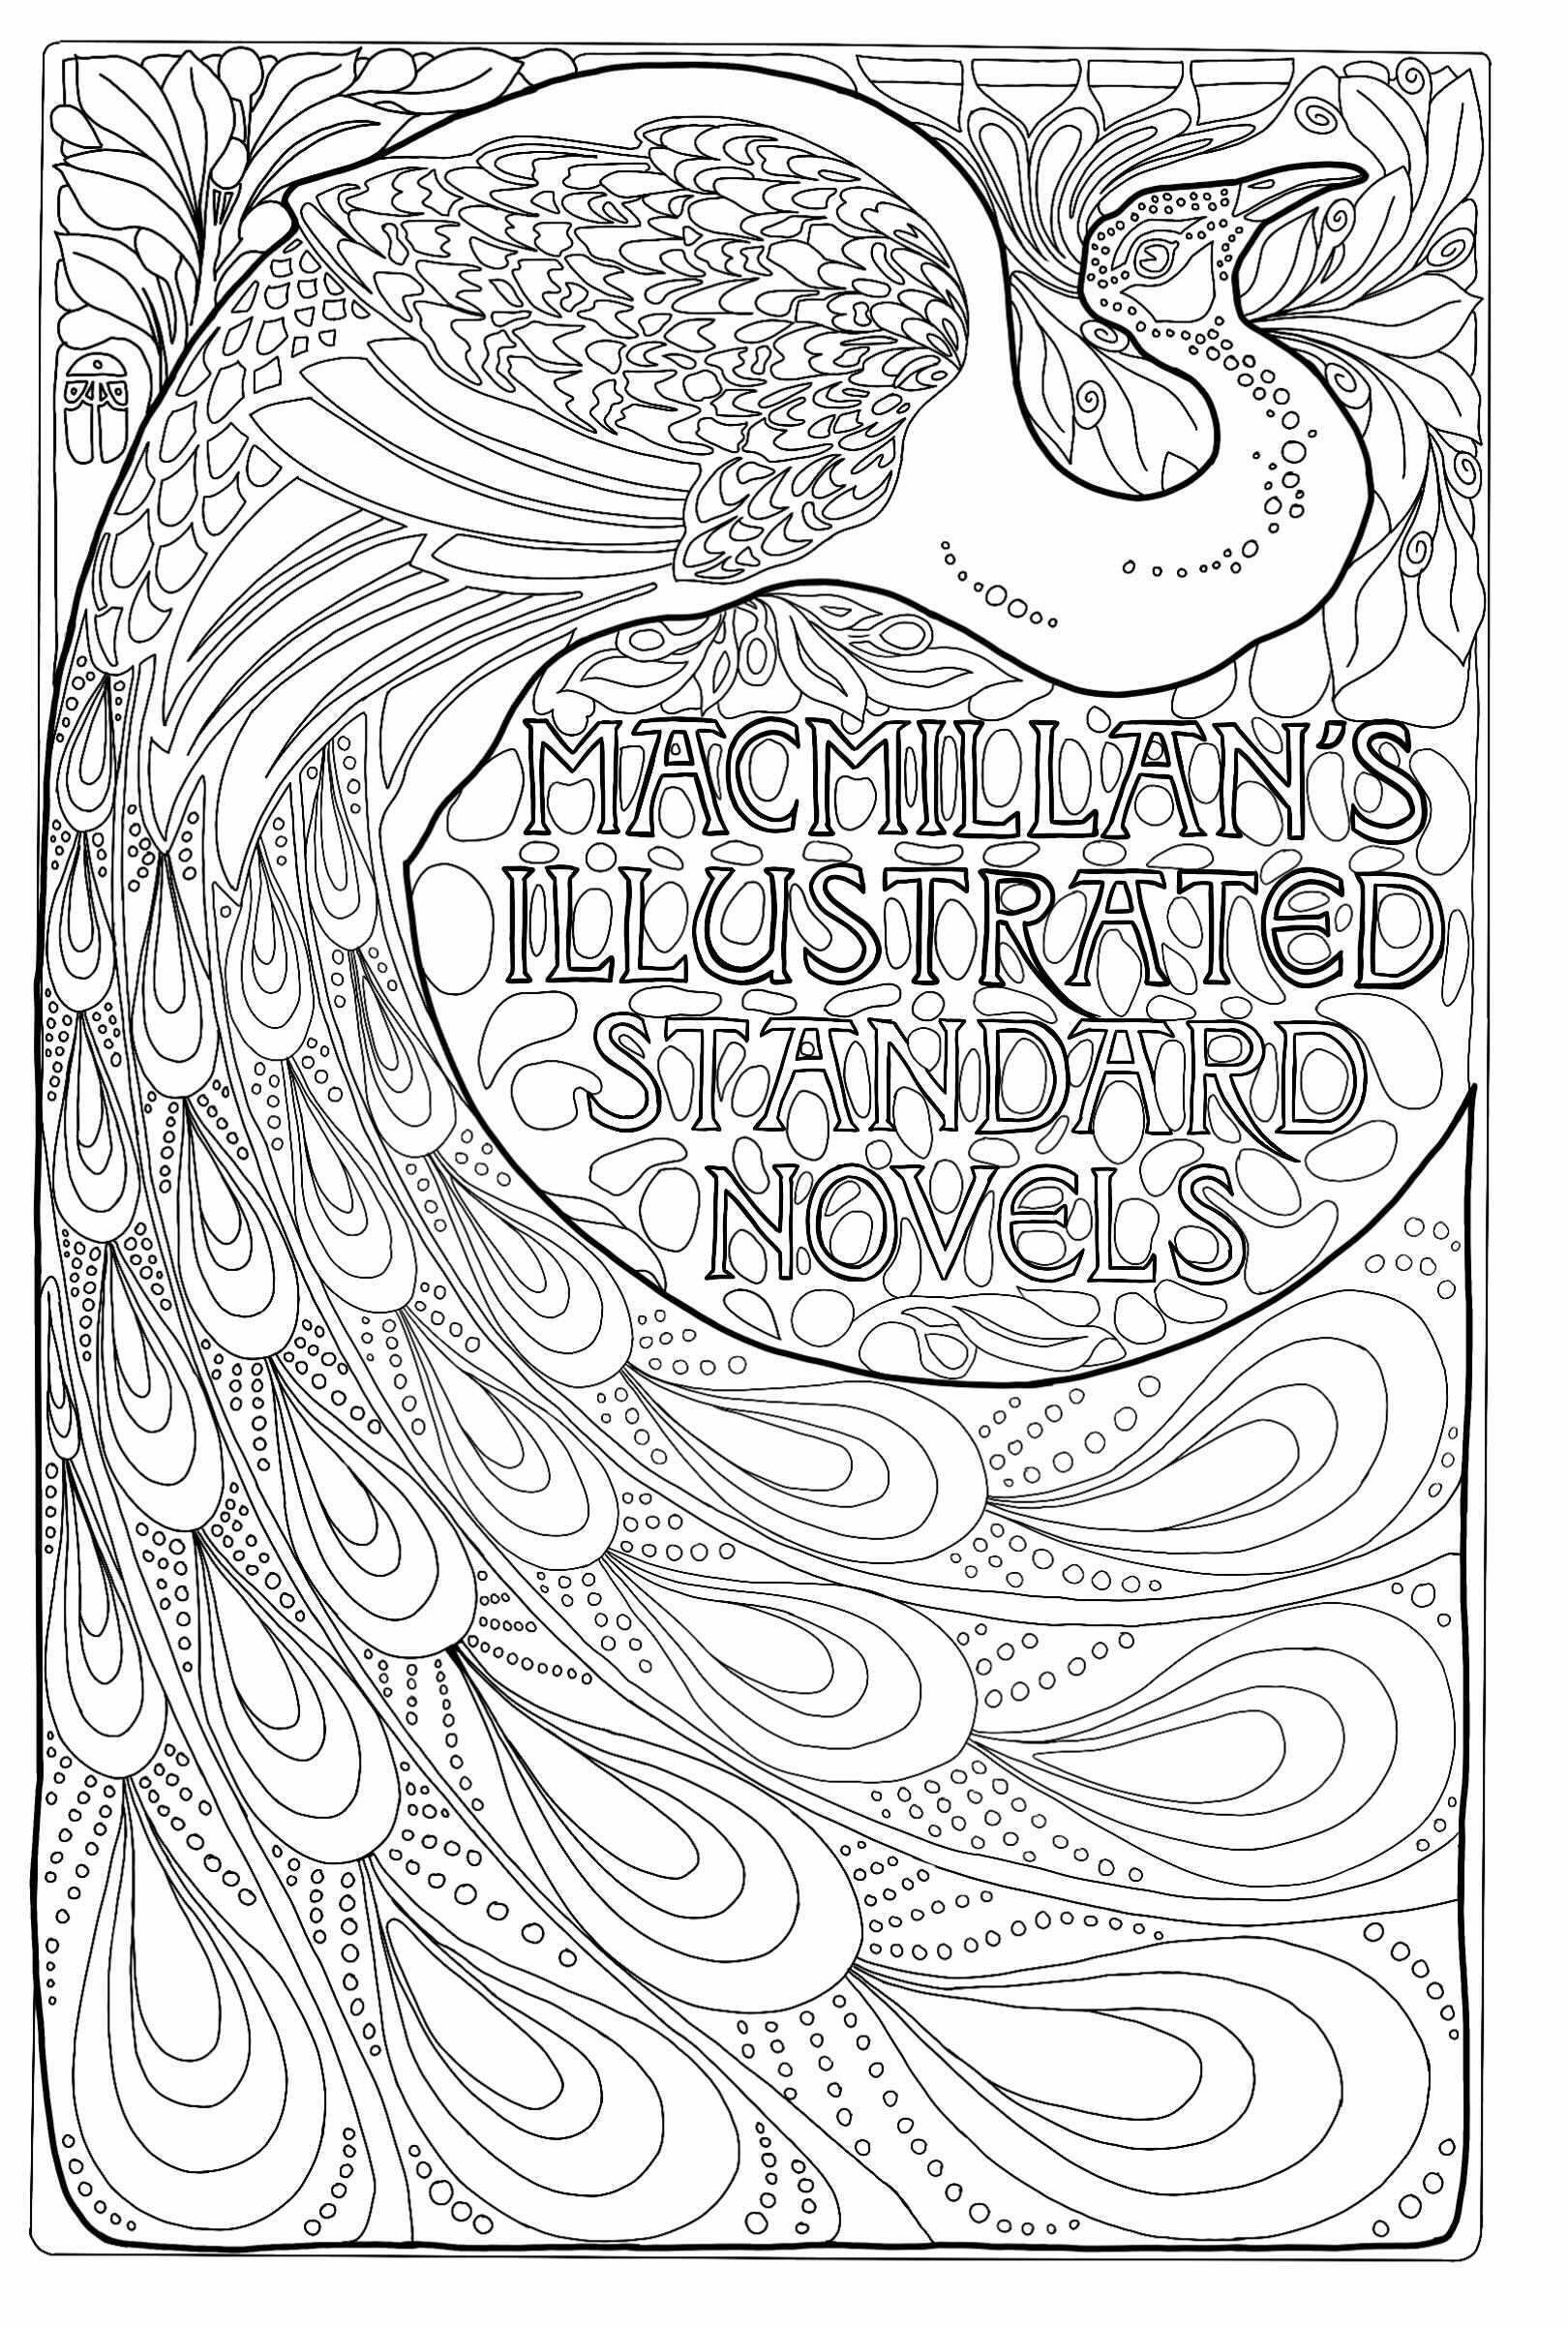 Mac. Millan's Illustrated Standard Novels: Capa de livro Art Nouveau com pavão (1896). Criado por Albert Angus Turbayne, ilustrador americano (1866, 1940), Artista : Louunatik